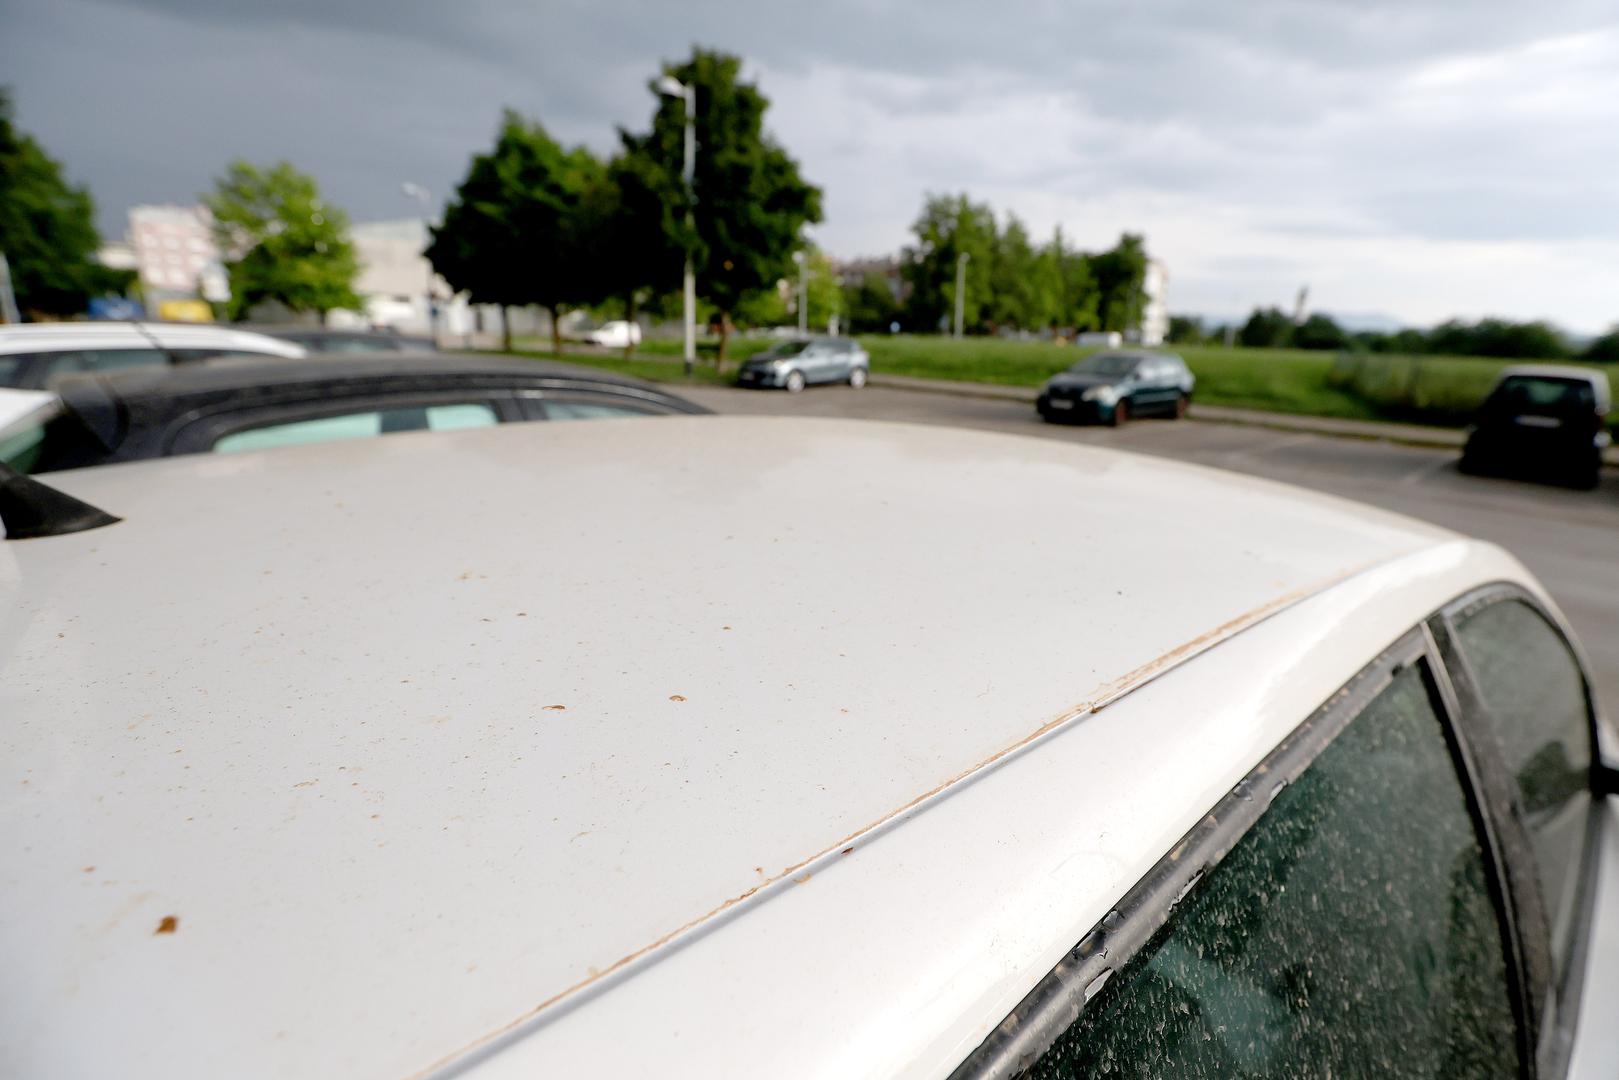 "Prljava" kiša opet je donijela afrički pijesak koji je stvorio probleme brojim vlasnicima automobila.